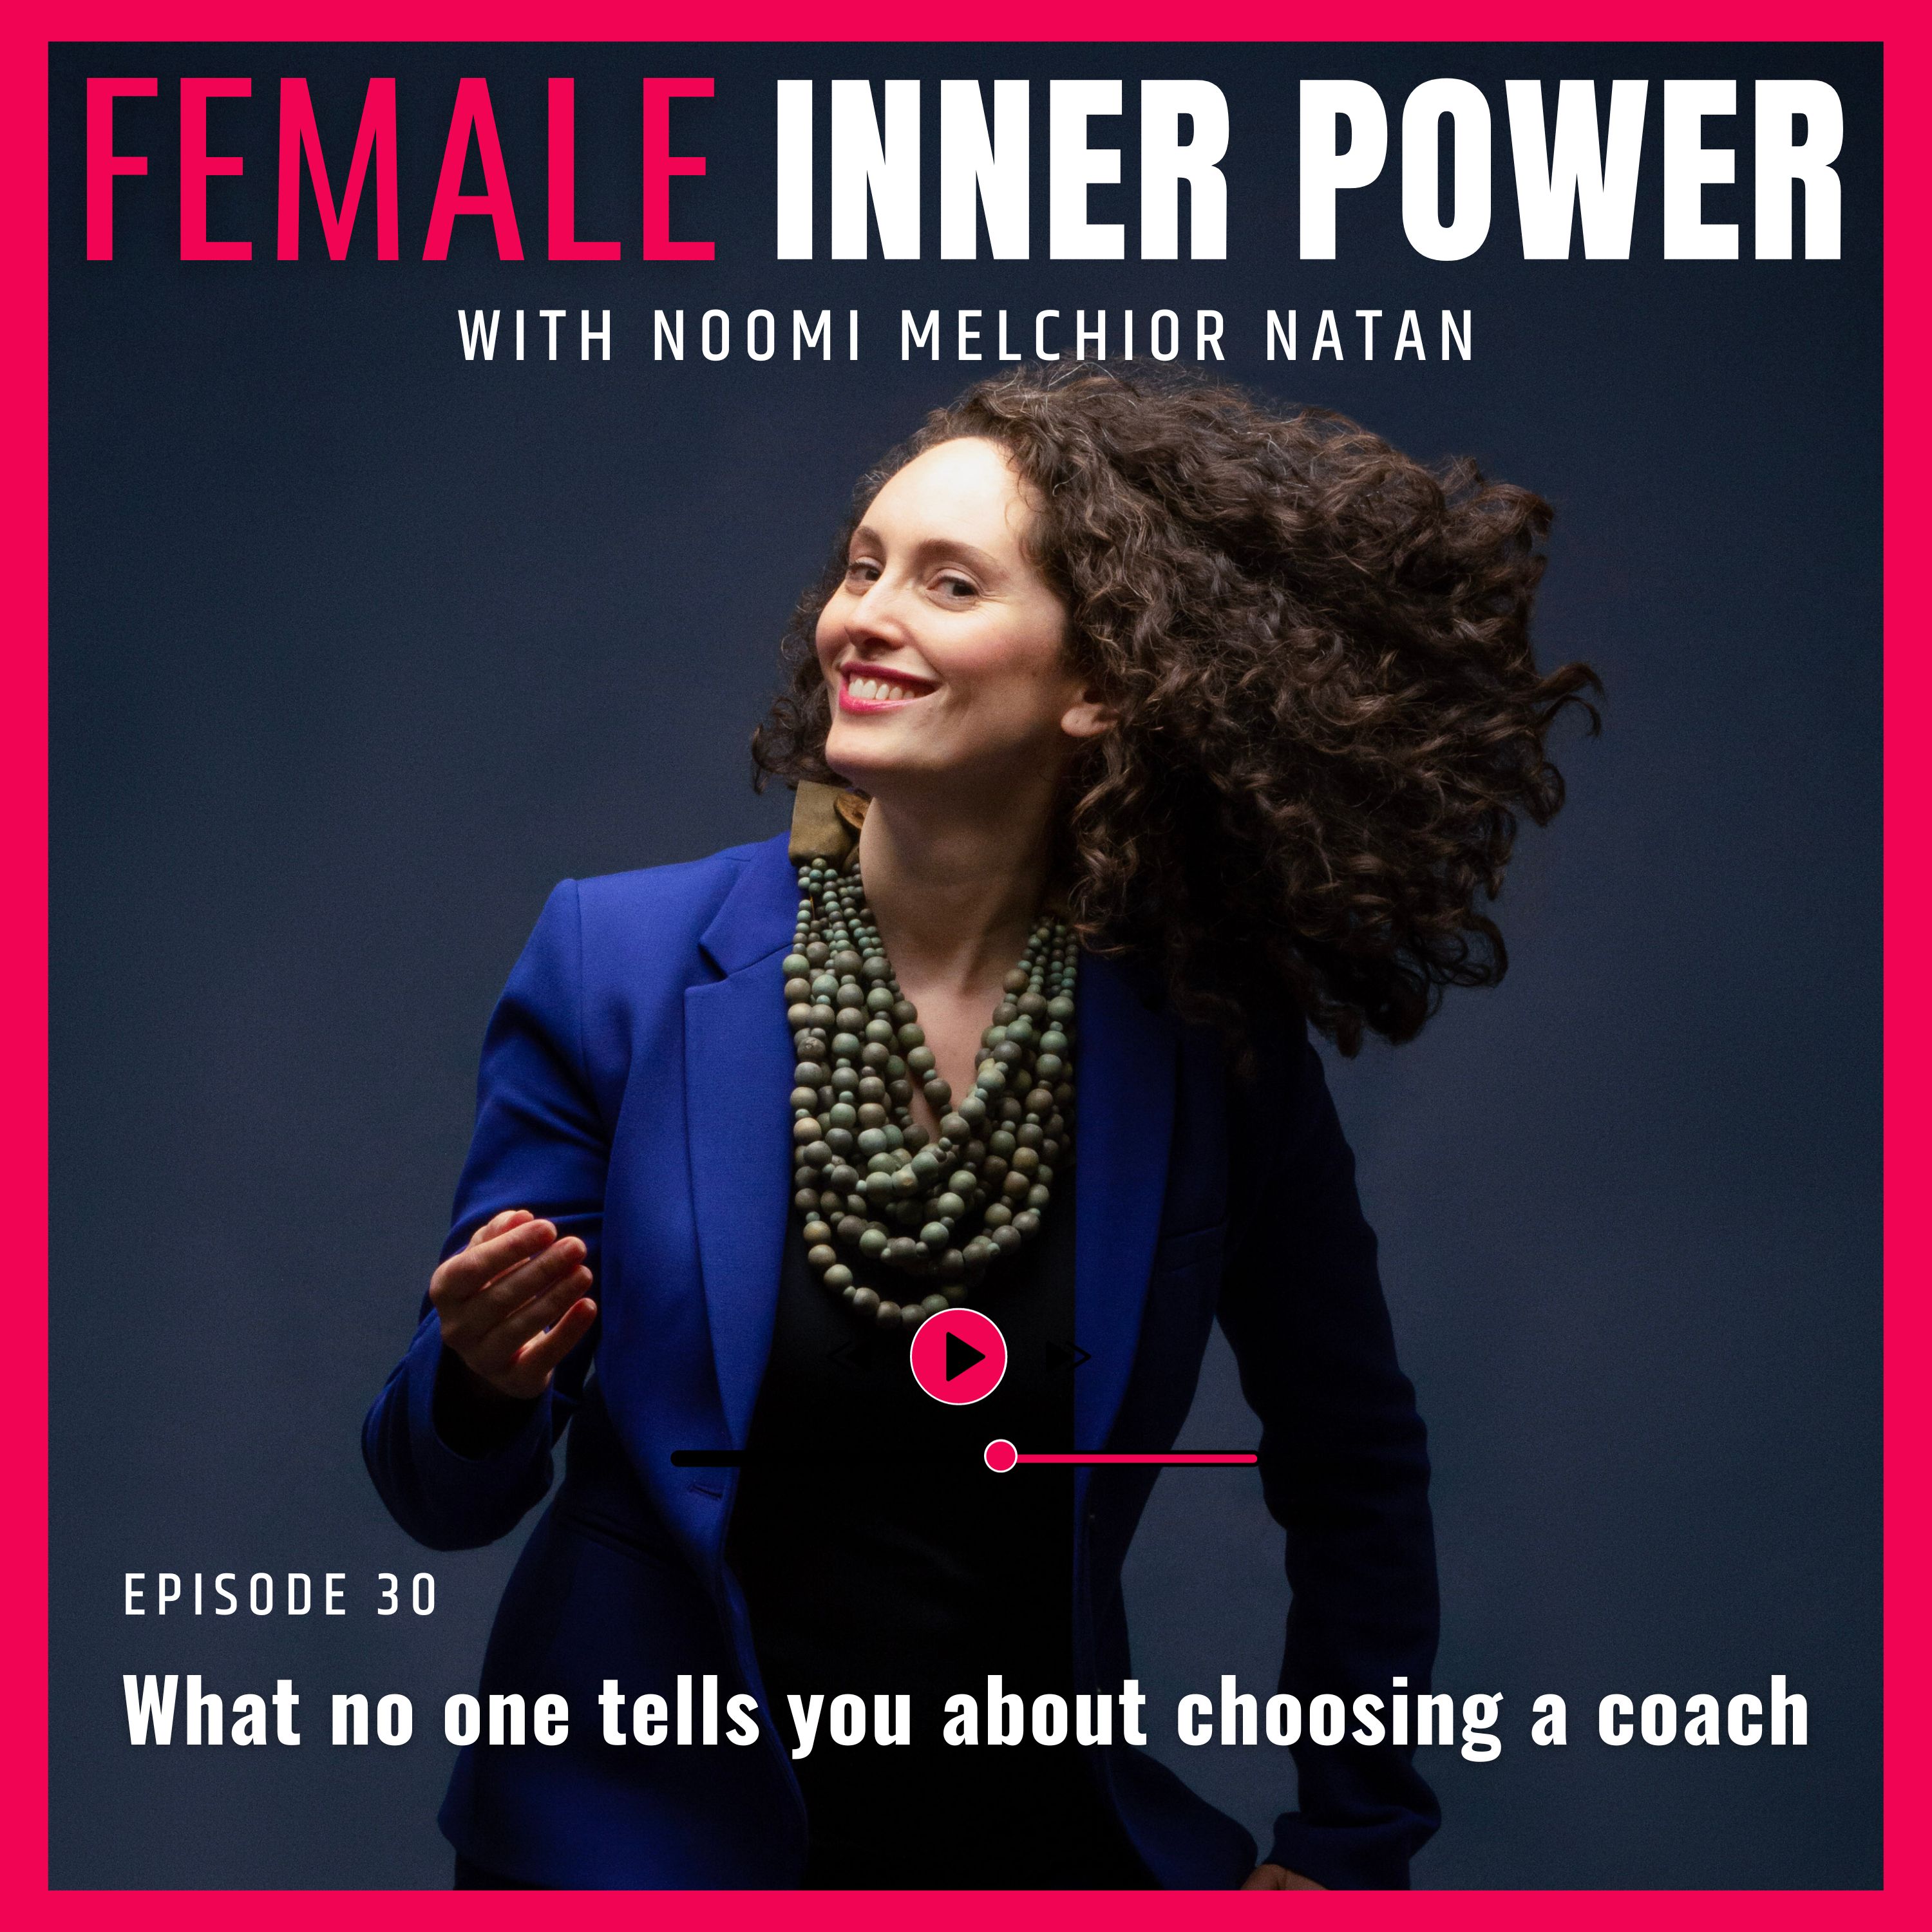 Artwork for podcast Female Inner Power